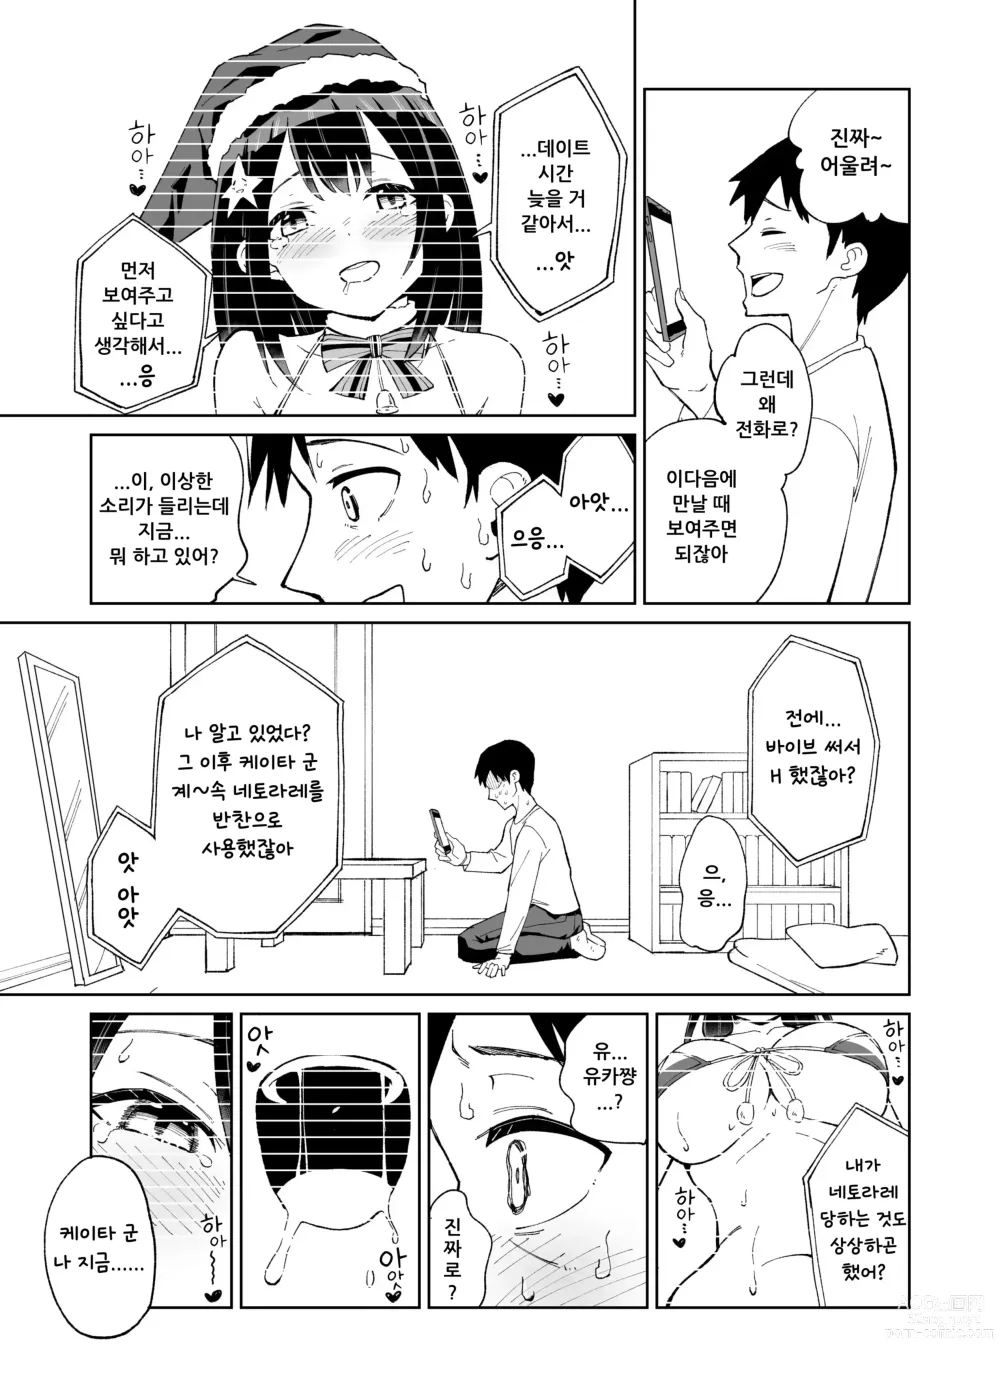 Page 26 of doujinshi 소꿉친구인 그녀에게 받은 X'mas 선물은 네토라레 였습니다